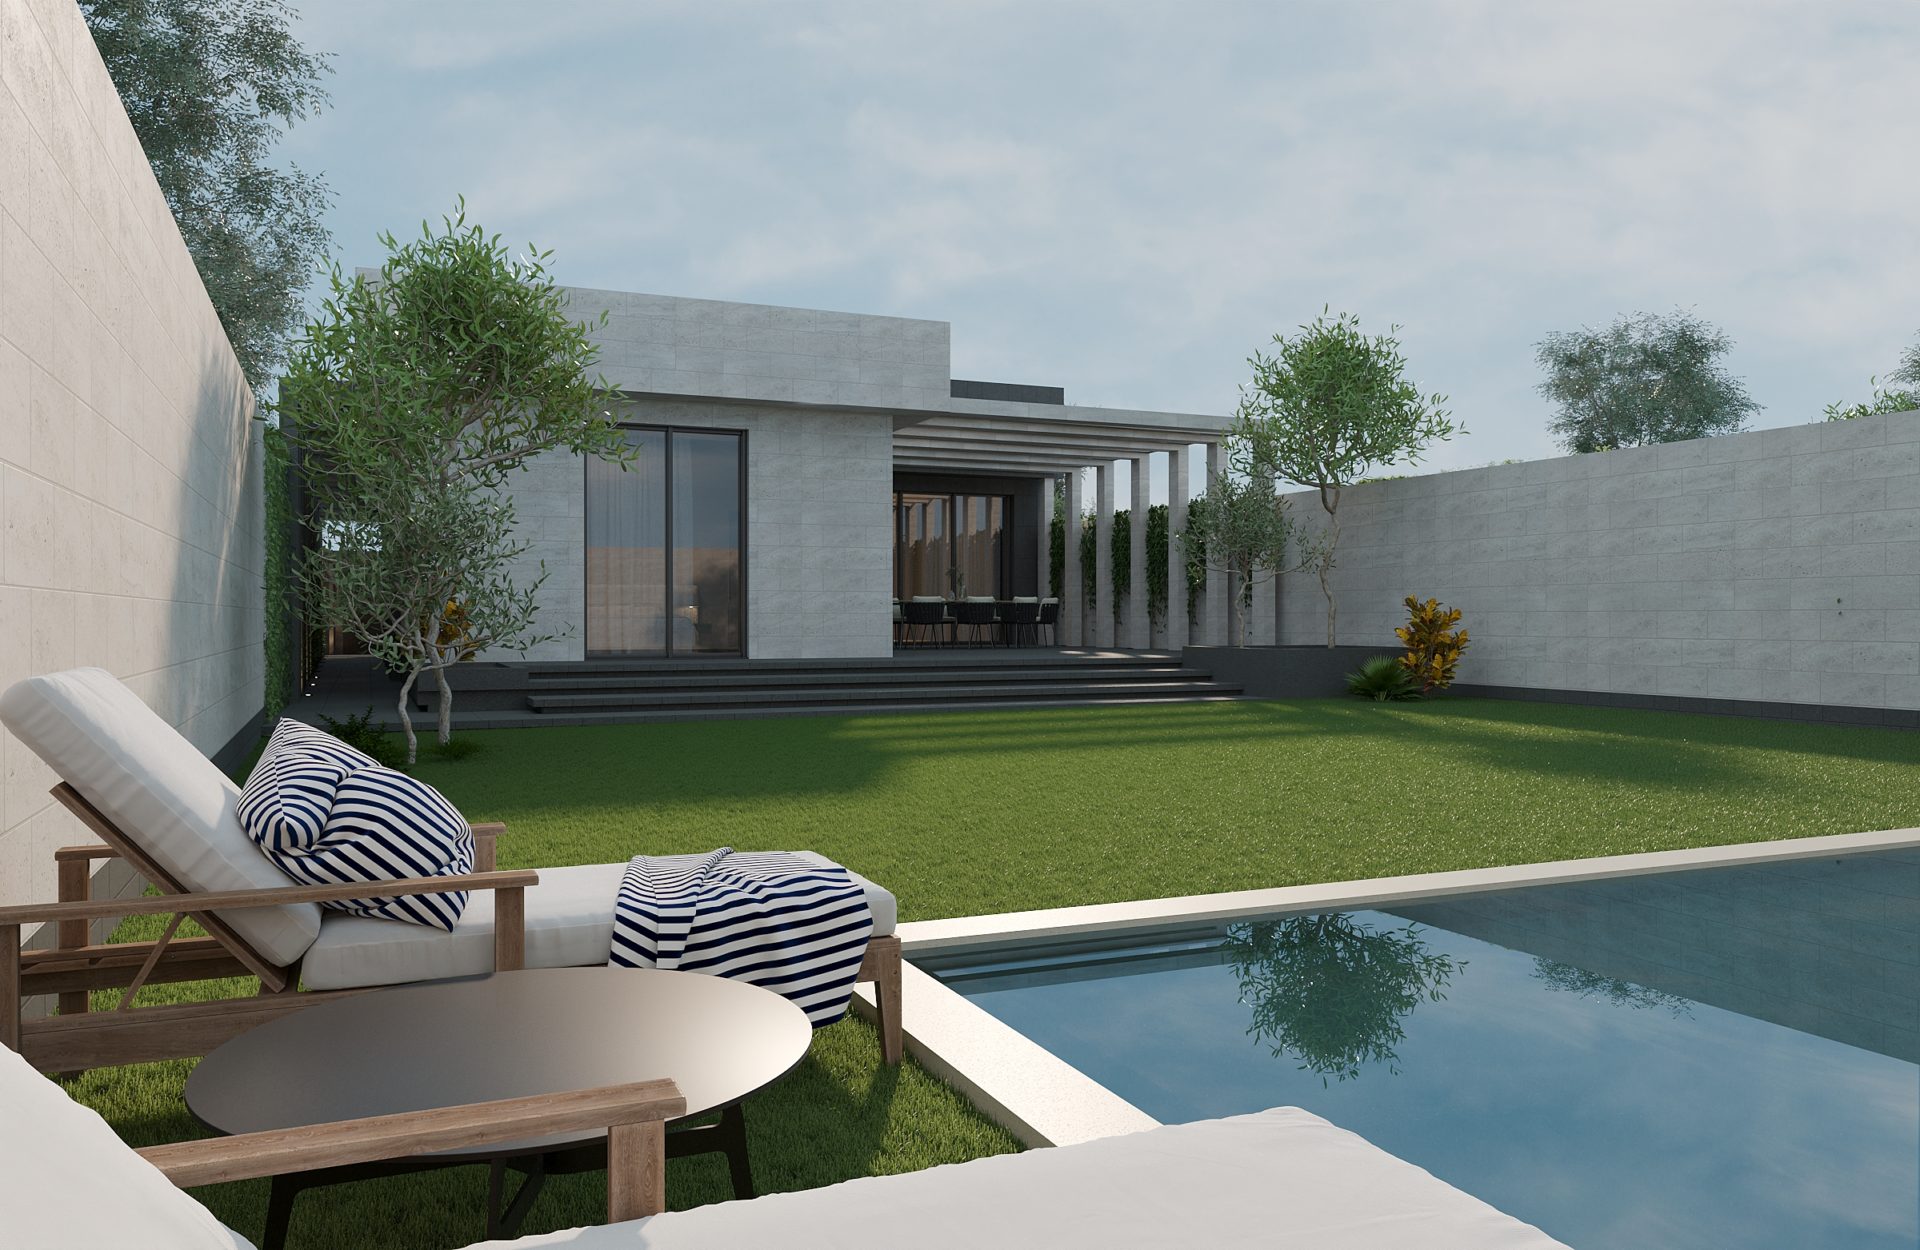 изображение 3D одноэтажного особняка с лужайкой и выходом к бассейну и шезлонгам